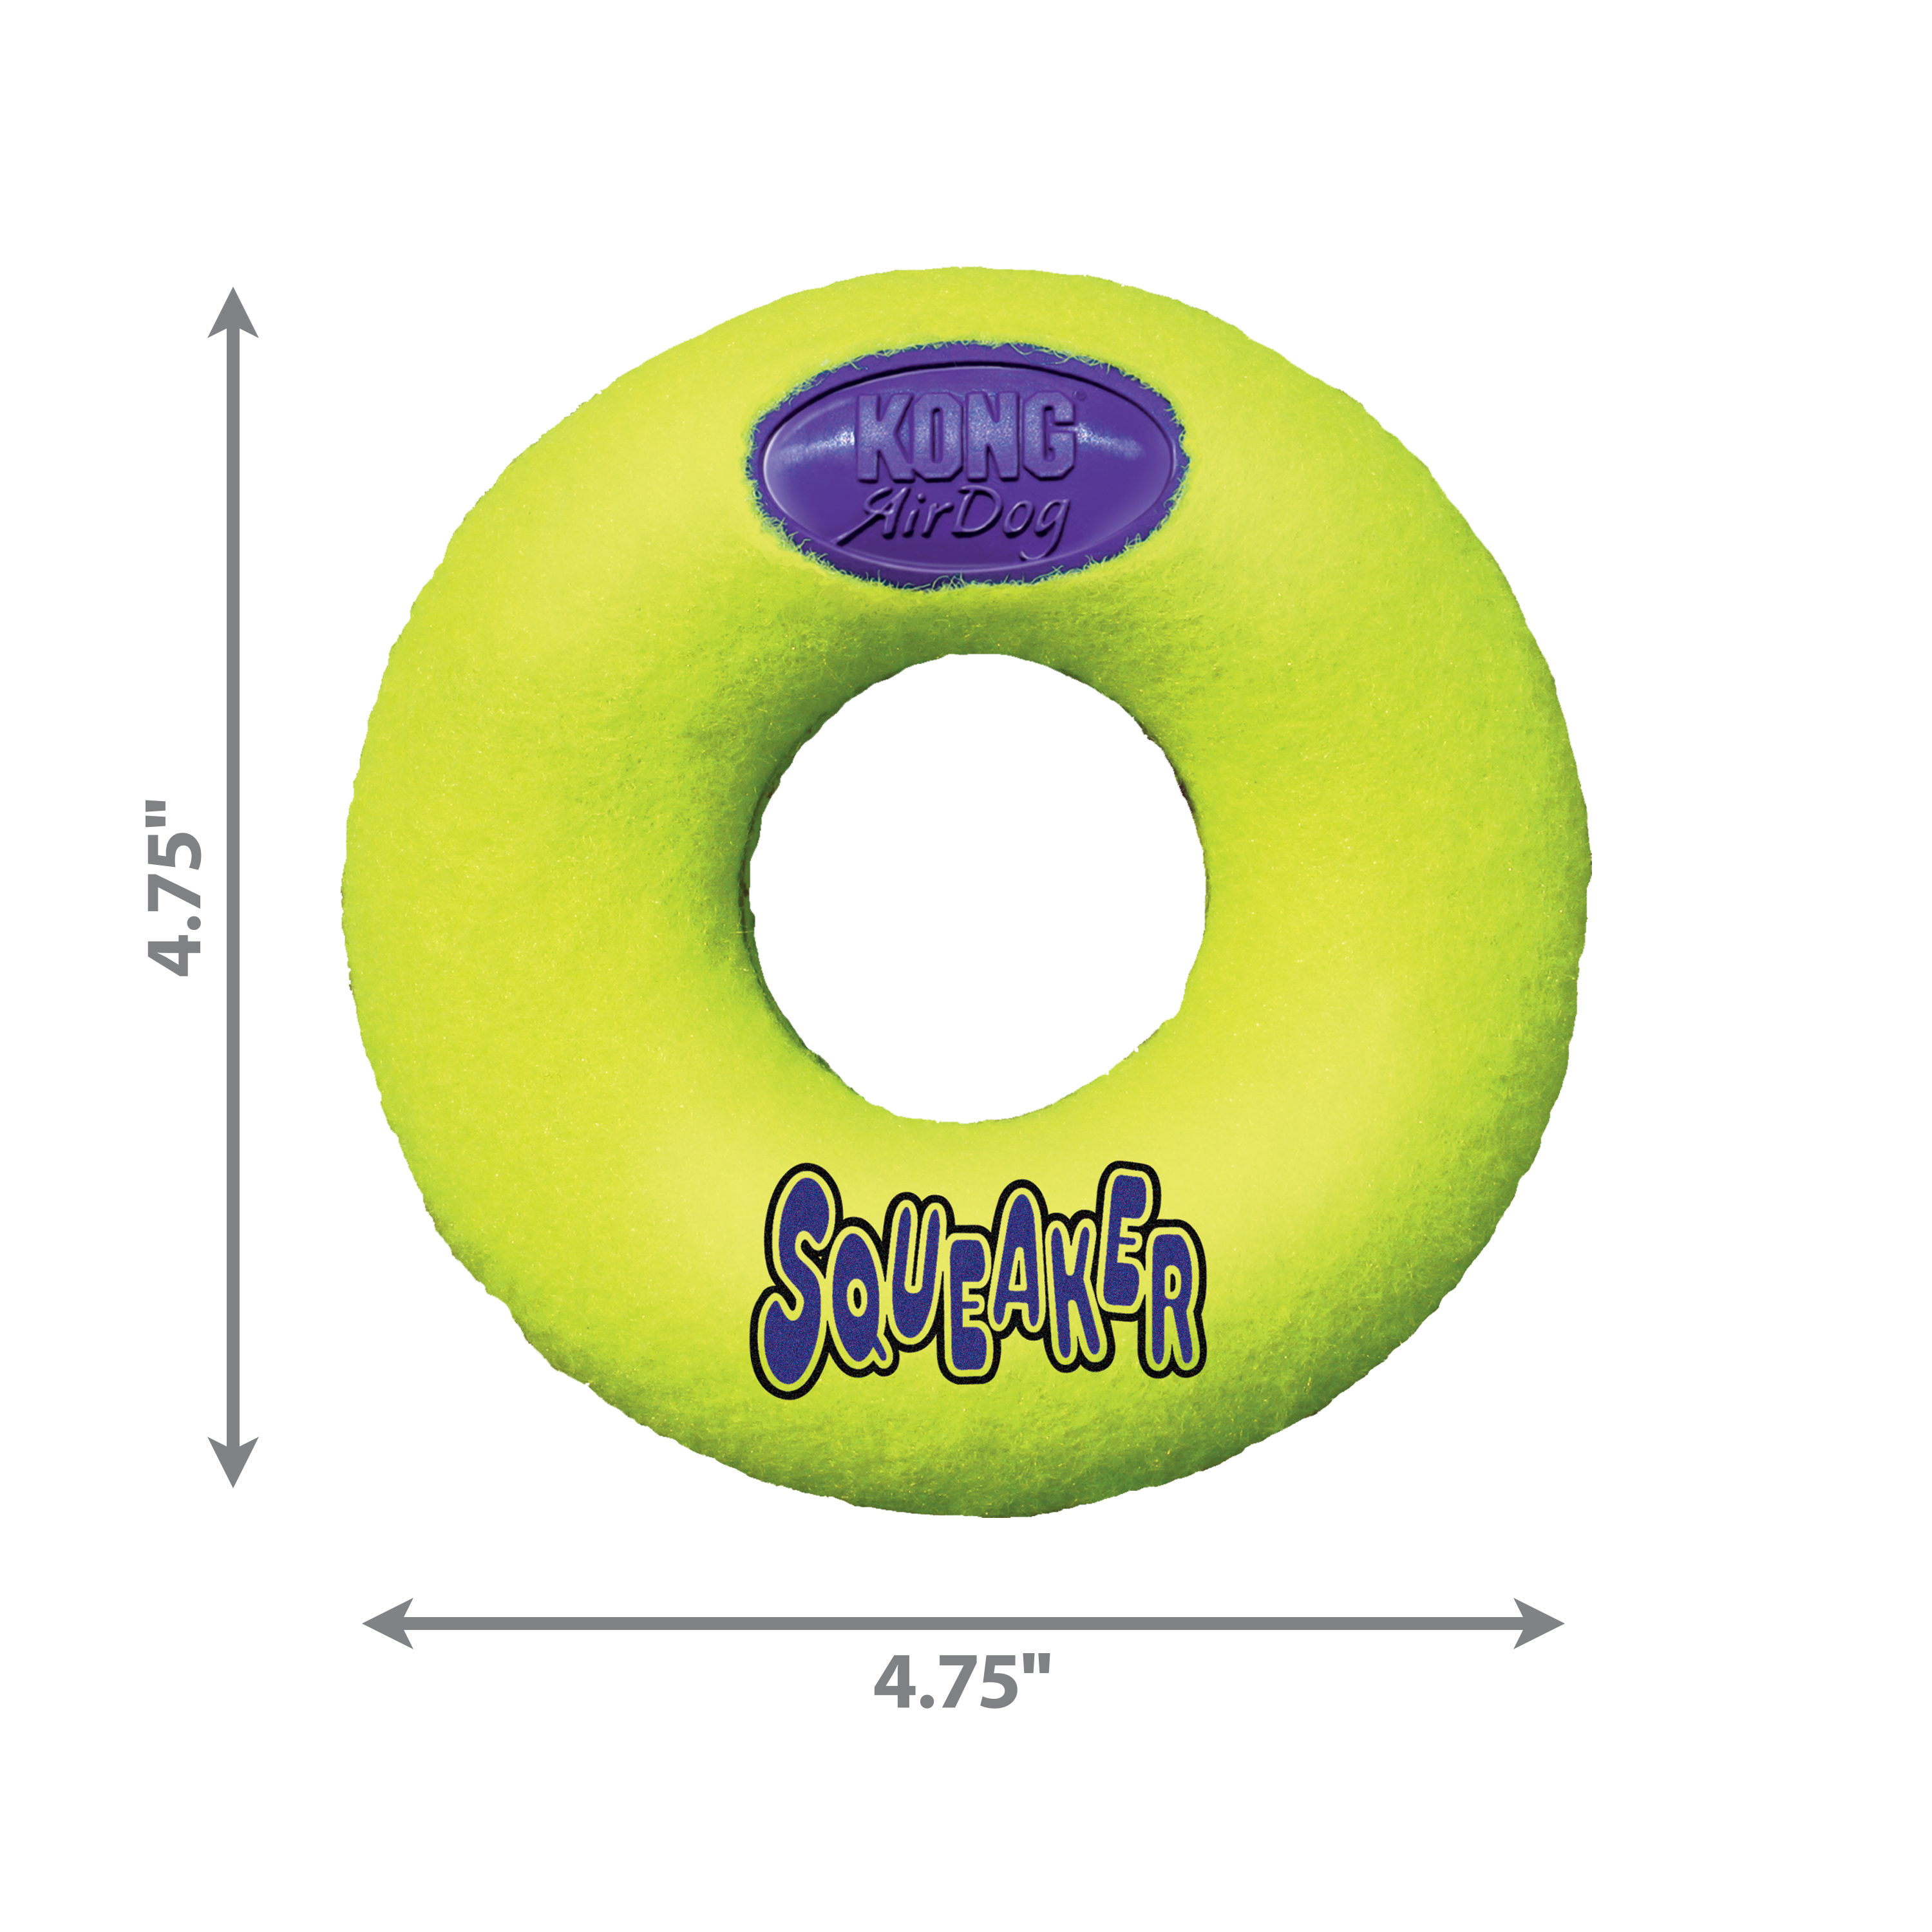 Imagem de produto do AirDog Donut dimoffpack